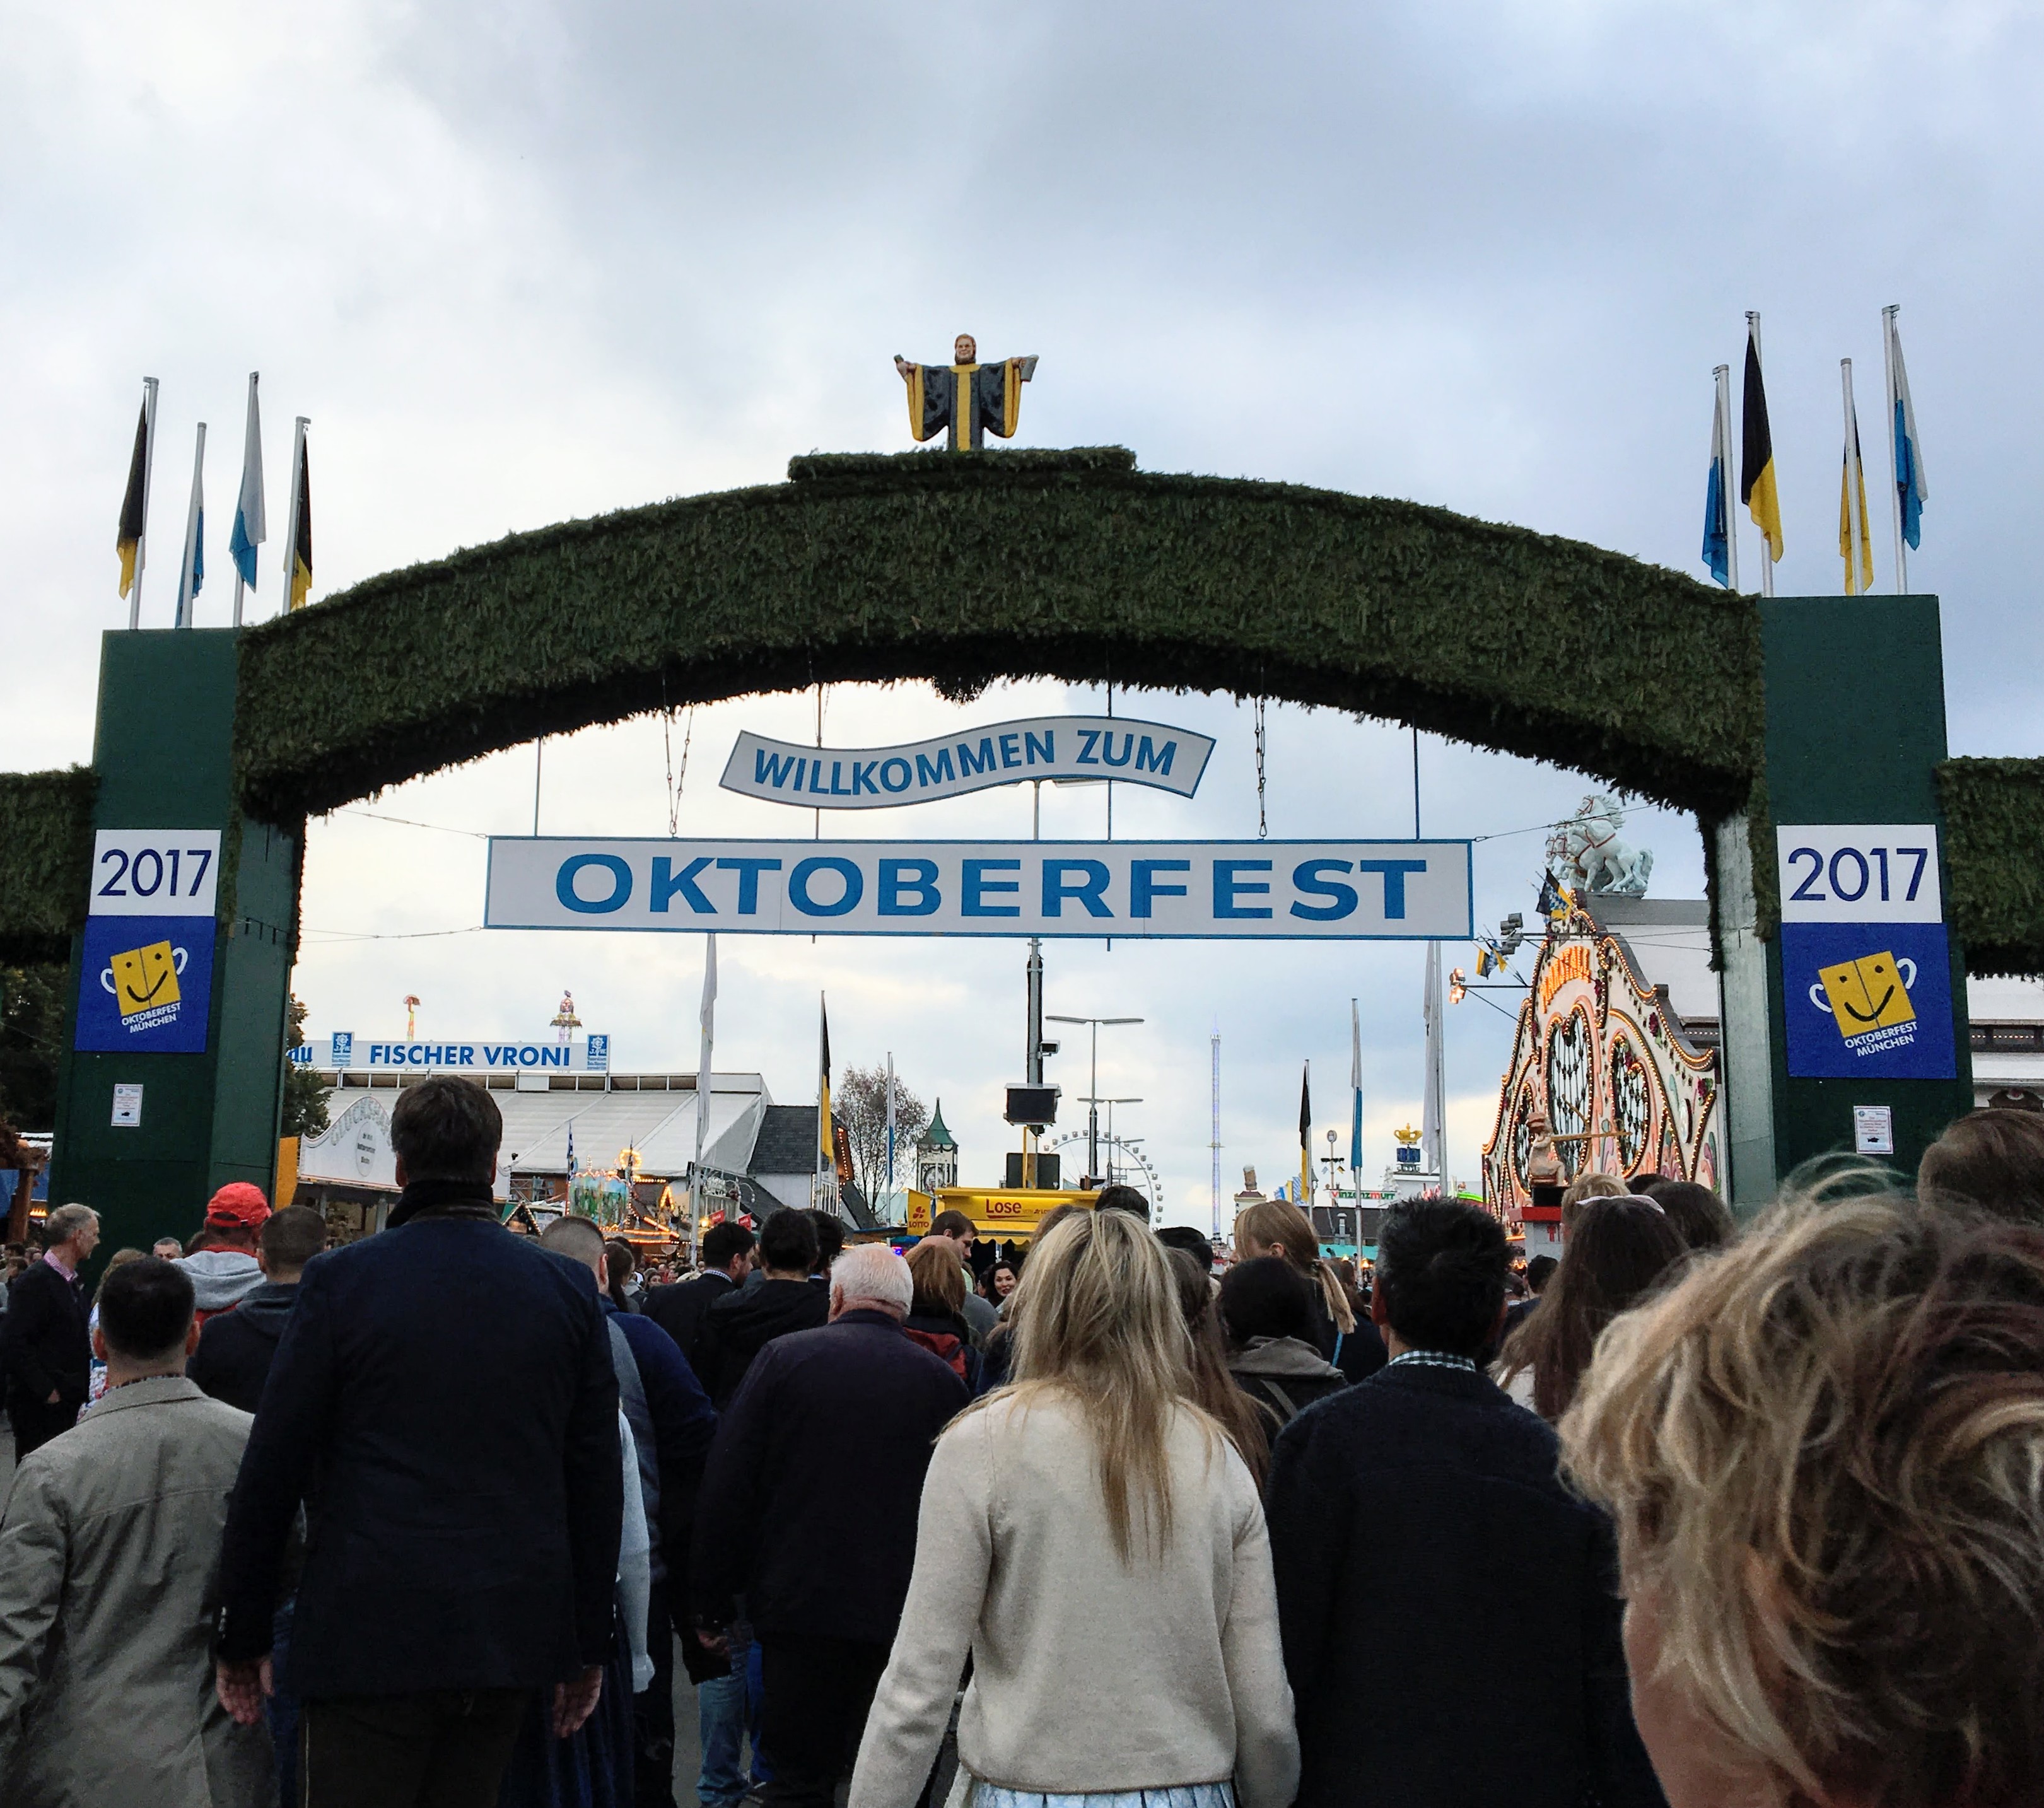 Entrance to Oktoberfest in Munich, Germany